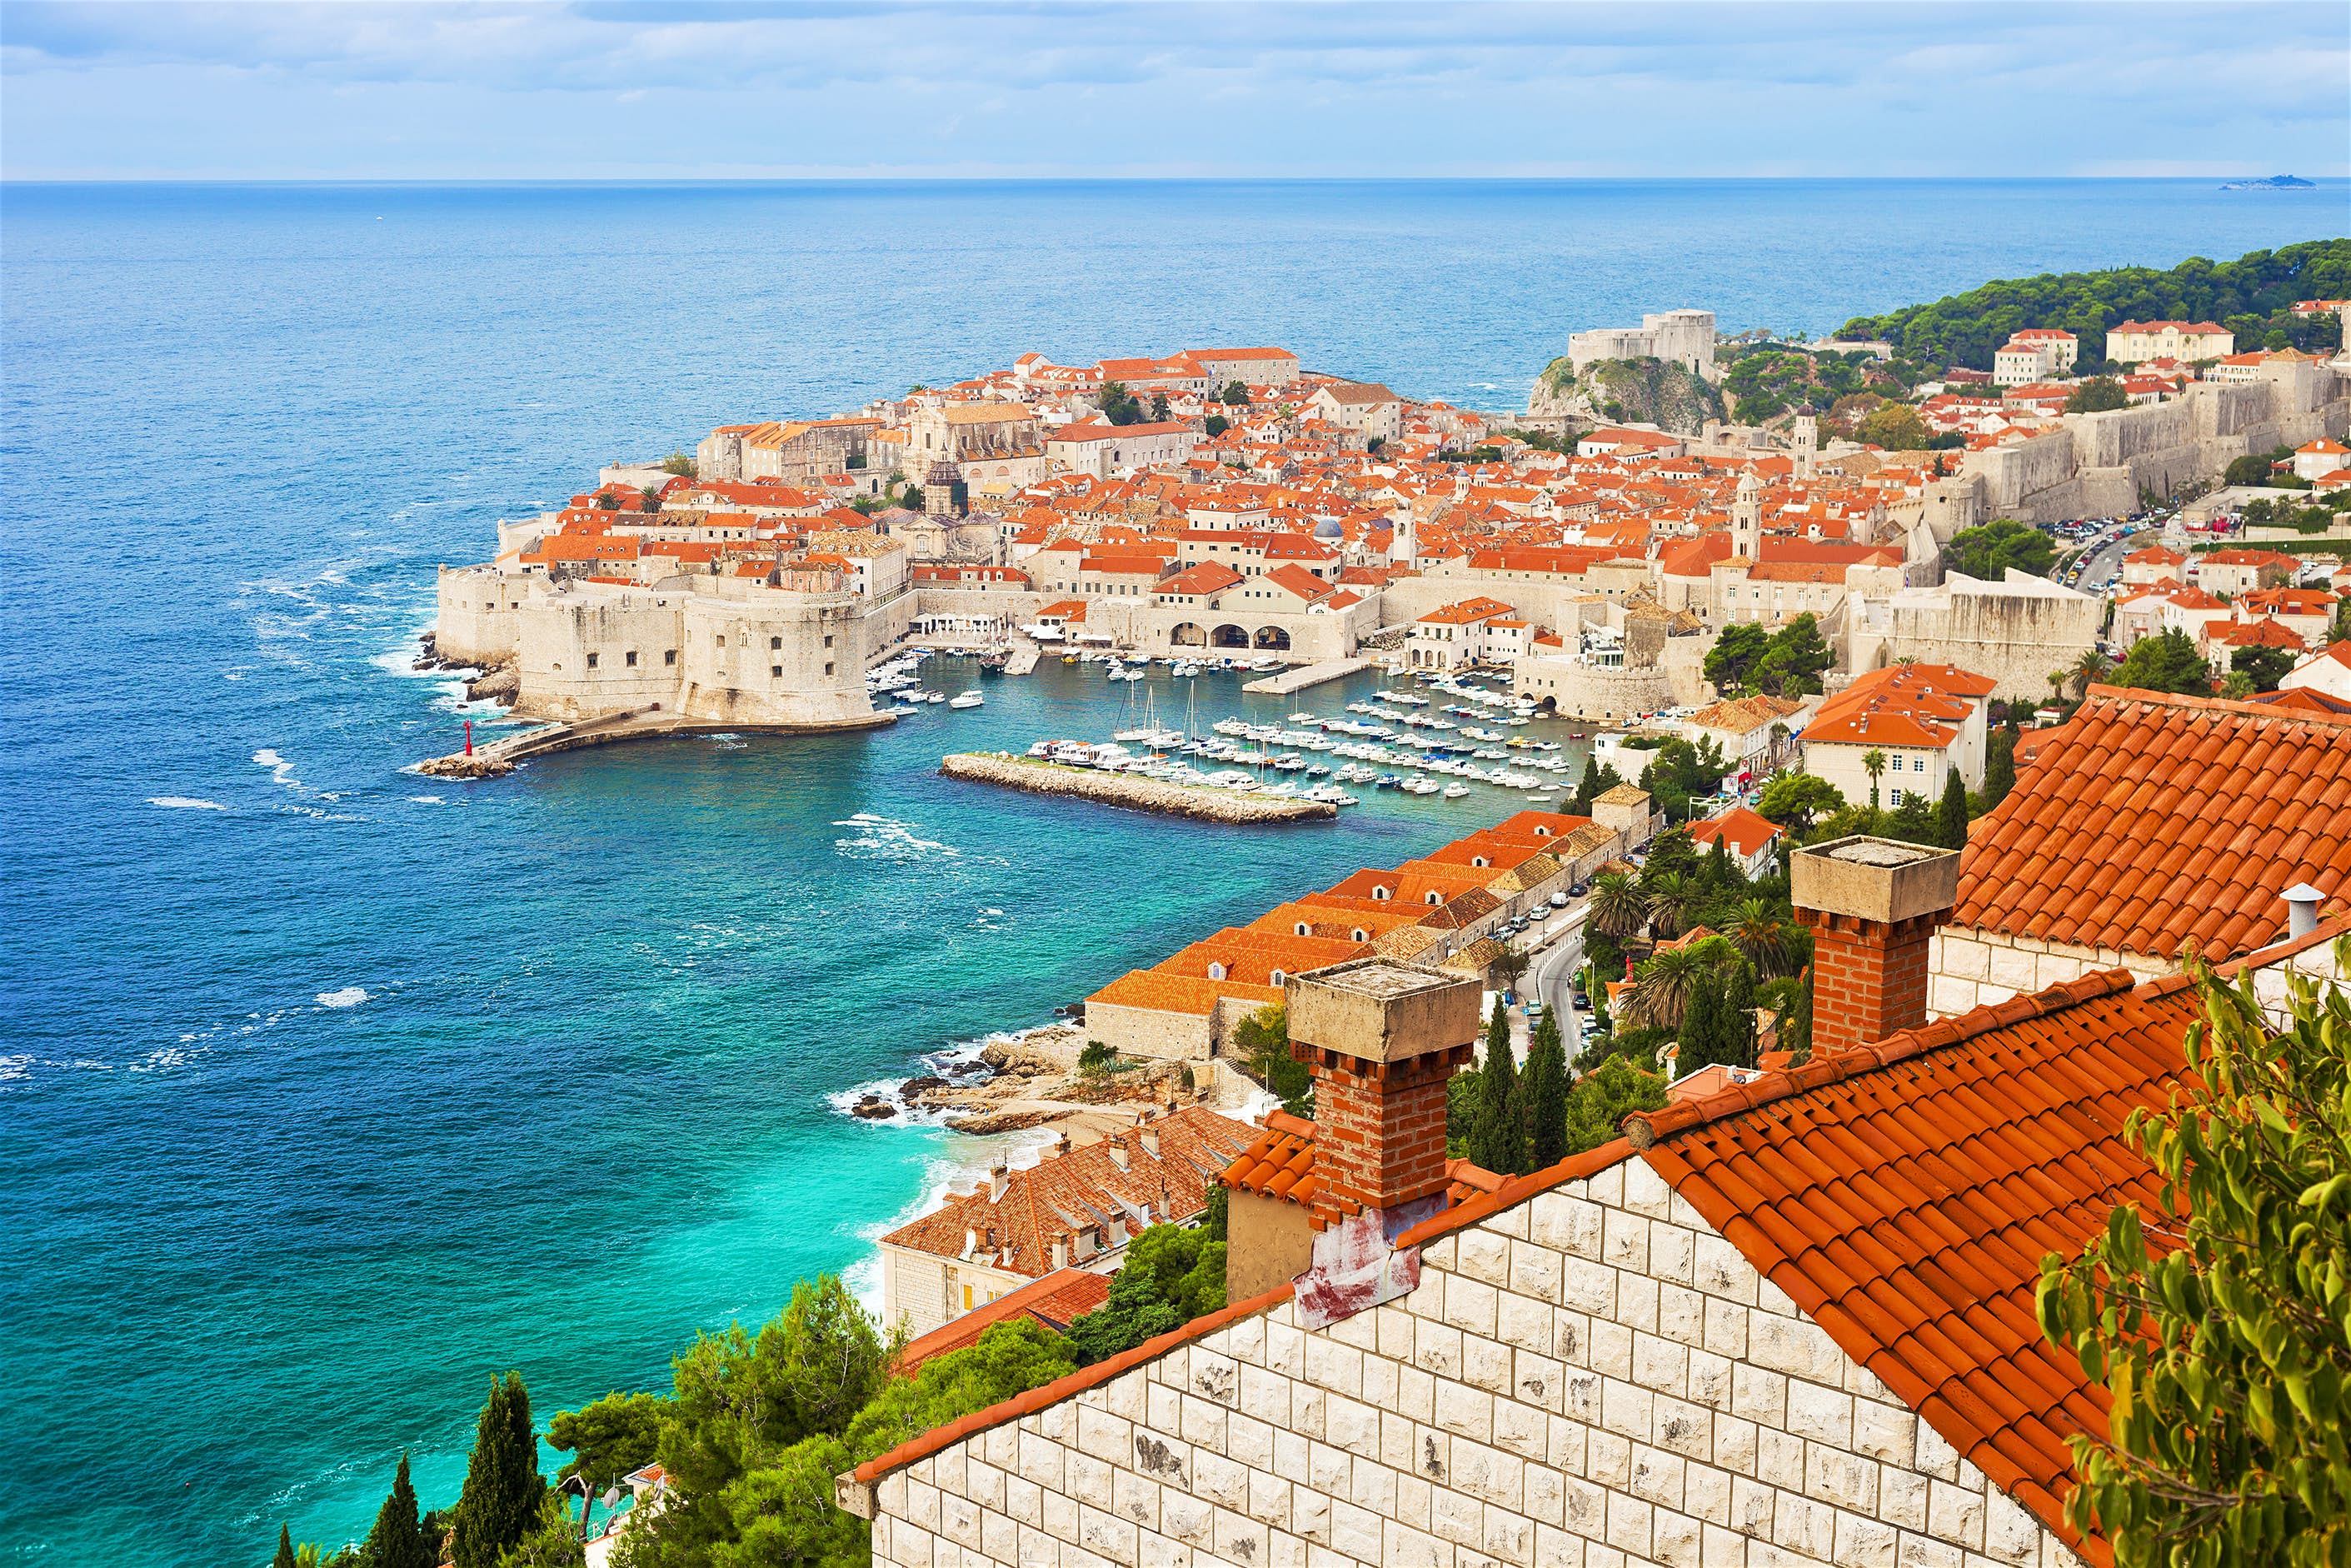 Pranverë në Dubrovnik – 3 Ditë €89/Person